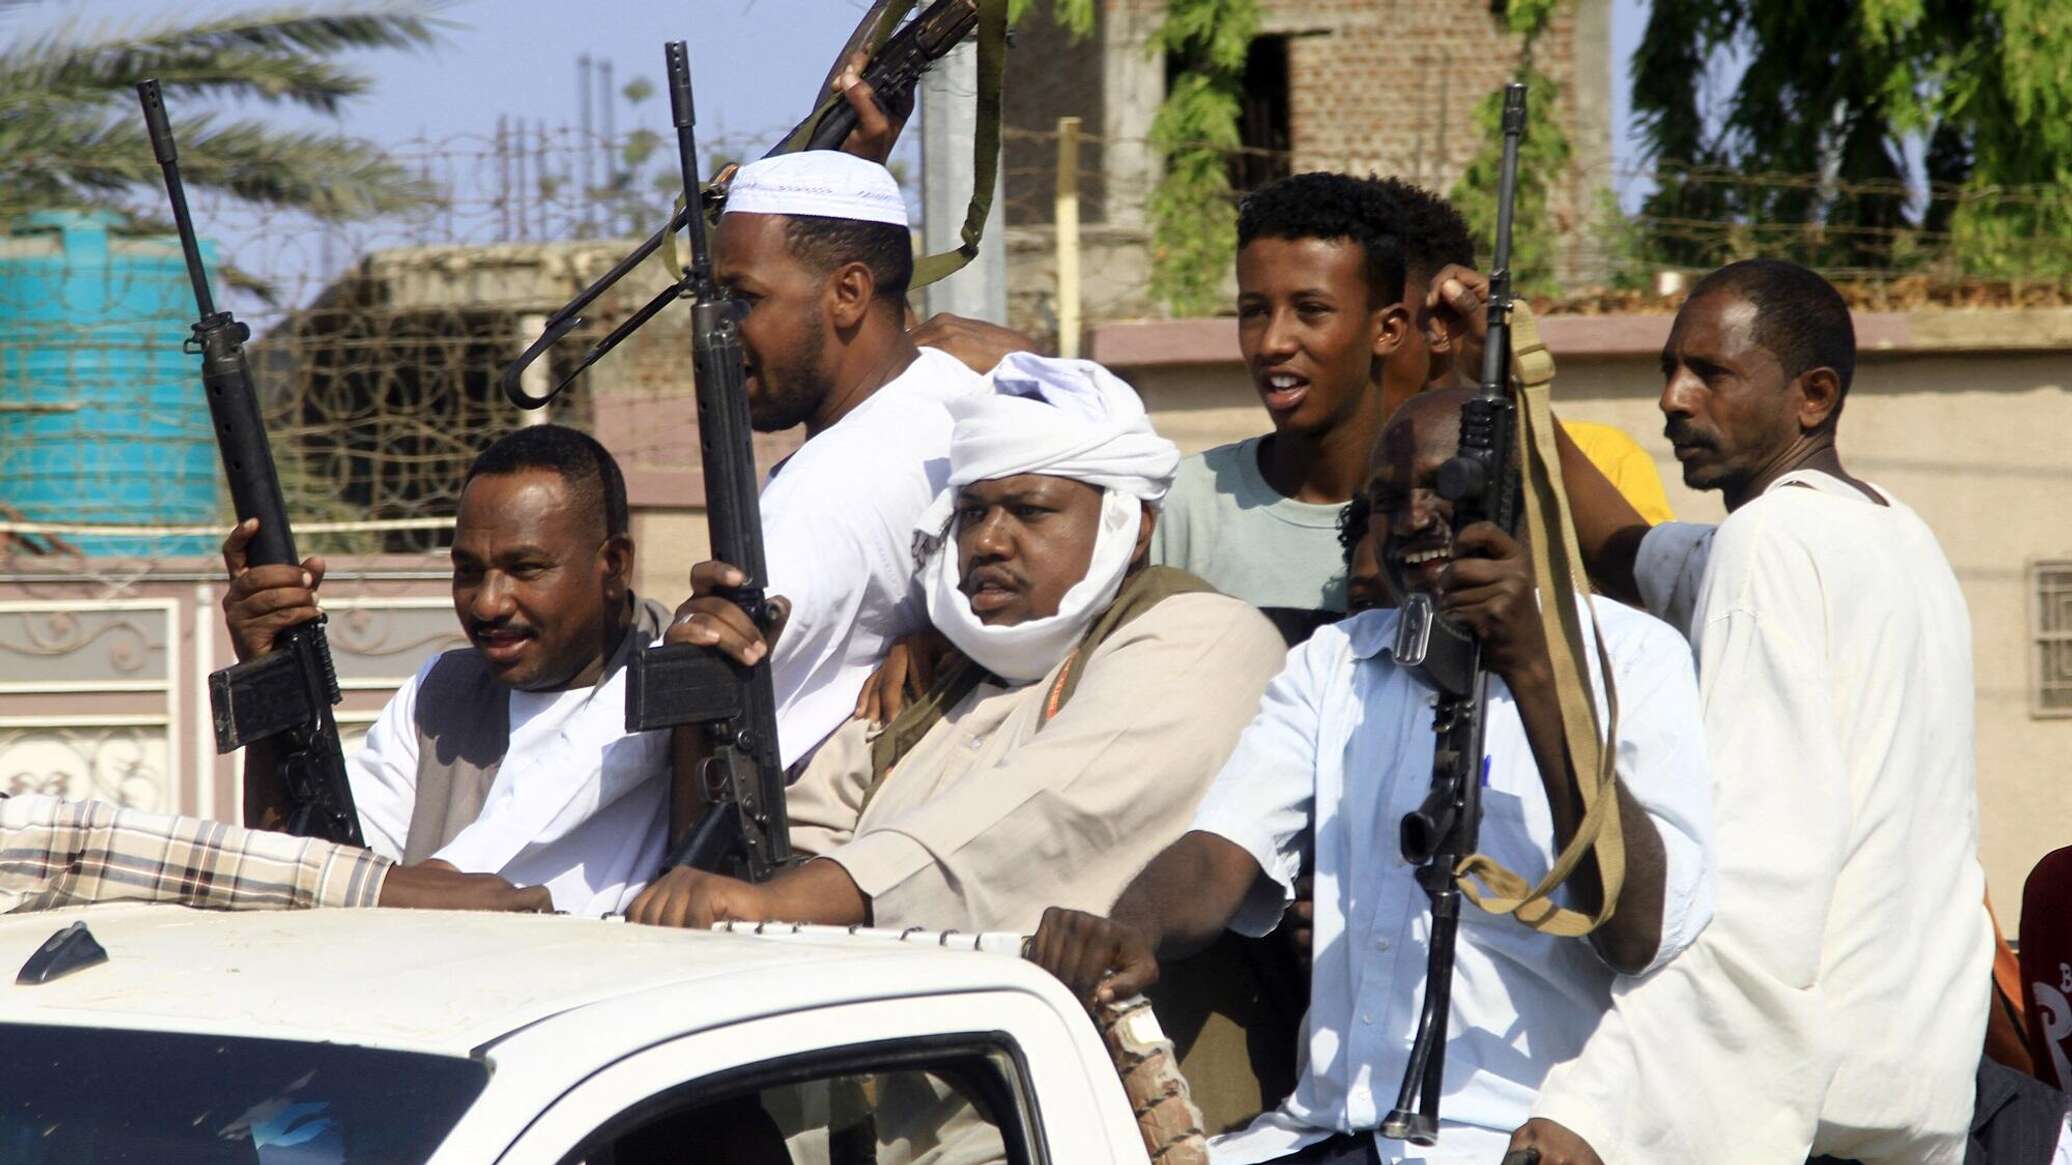 السودان... والي النيل الأبيض يعلن الجهاد "للدفاع عن الدين والوطن والعرض"